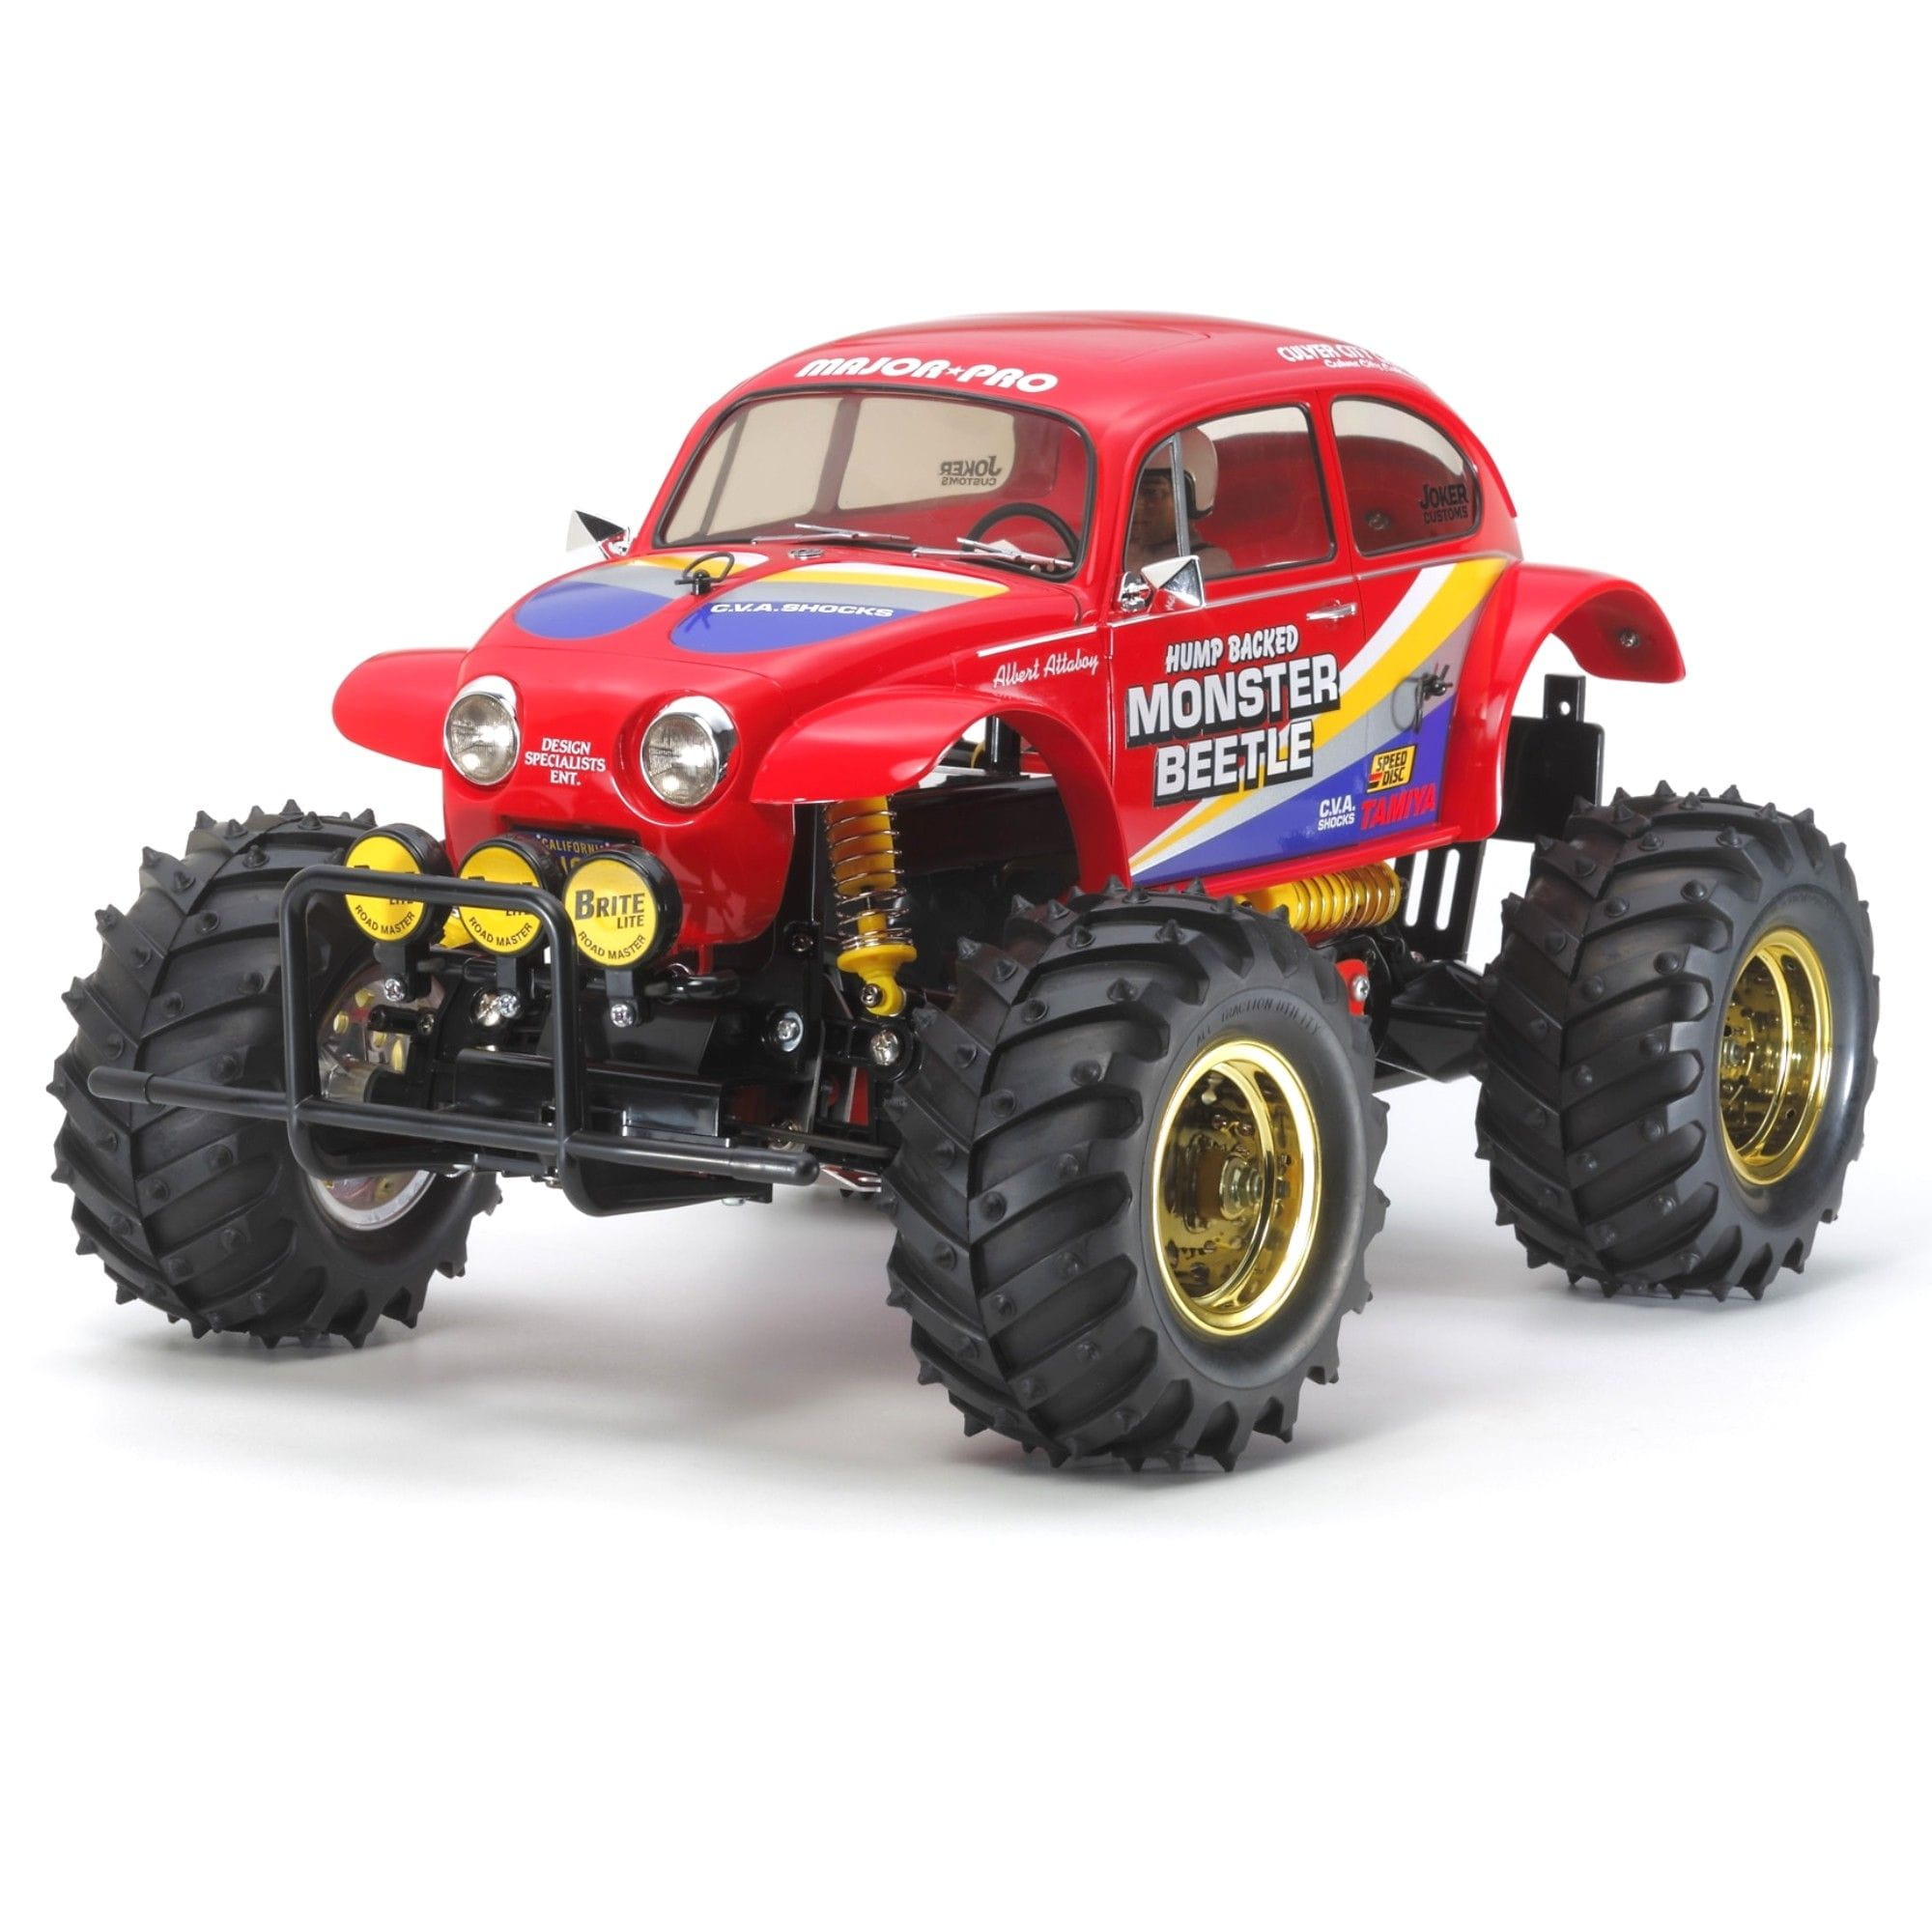 Tamiya 1:10 RC Car Monster Beetle 2015 Kit Bausatz